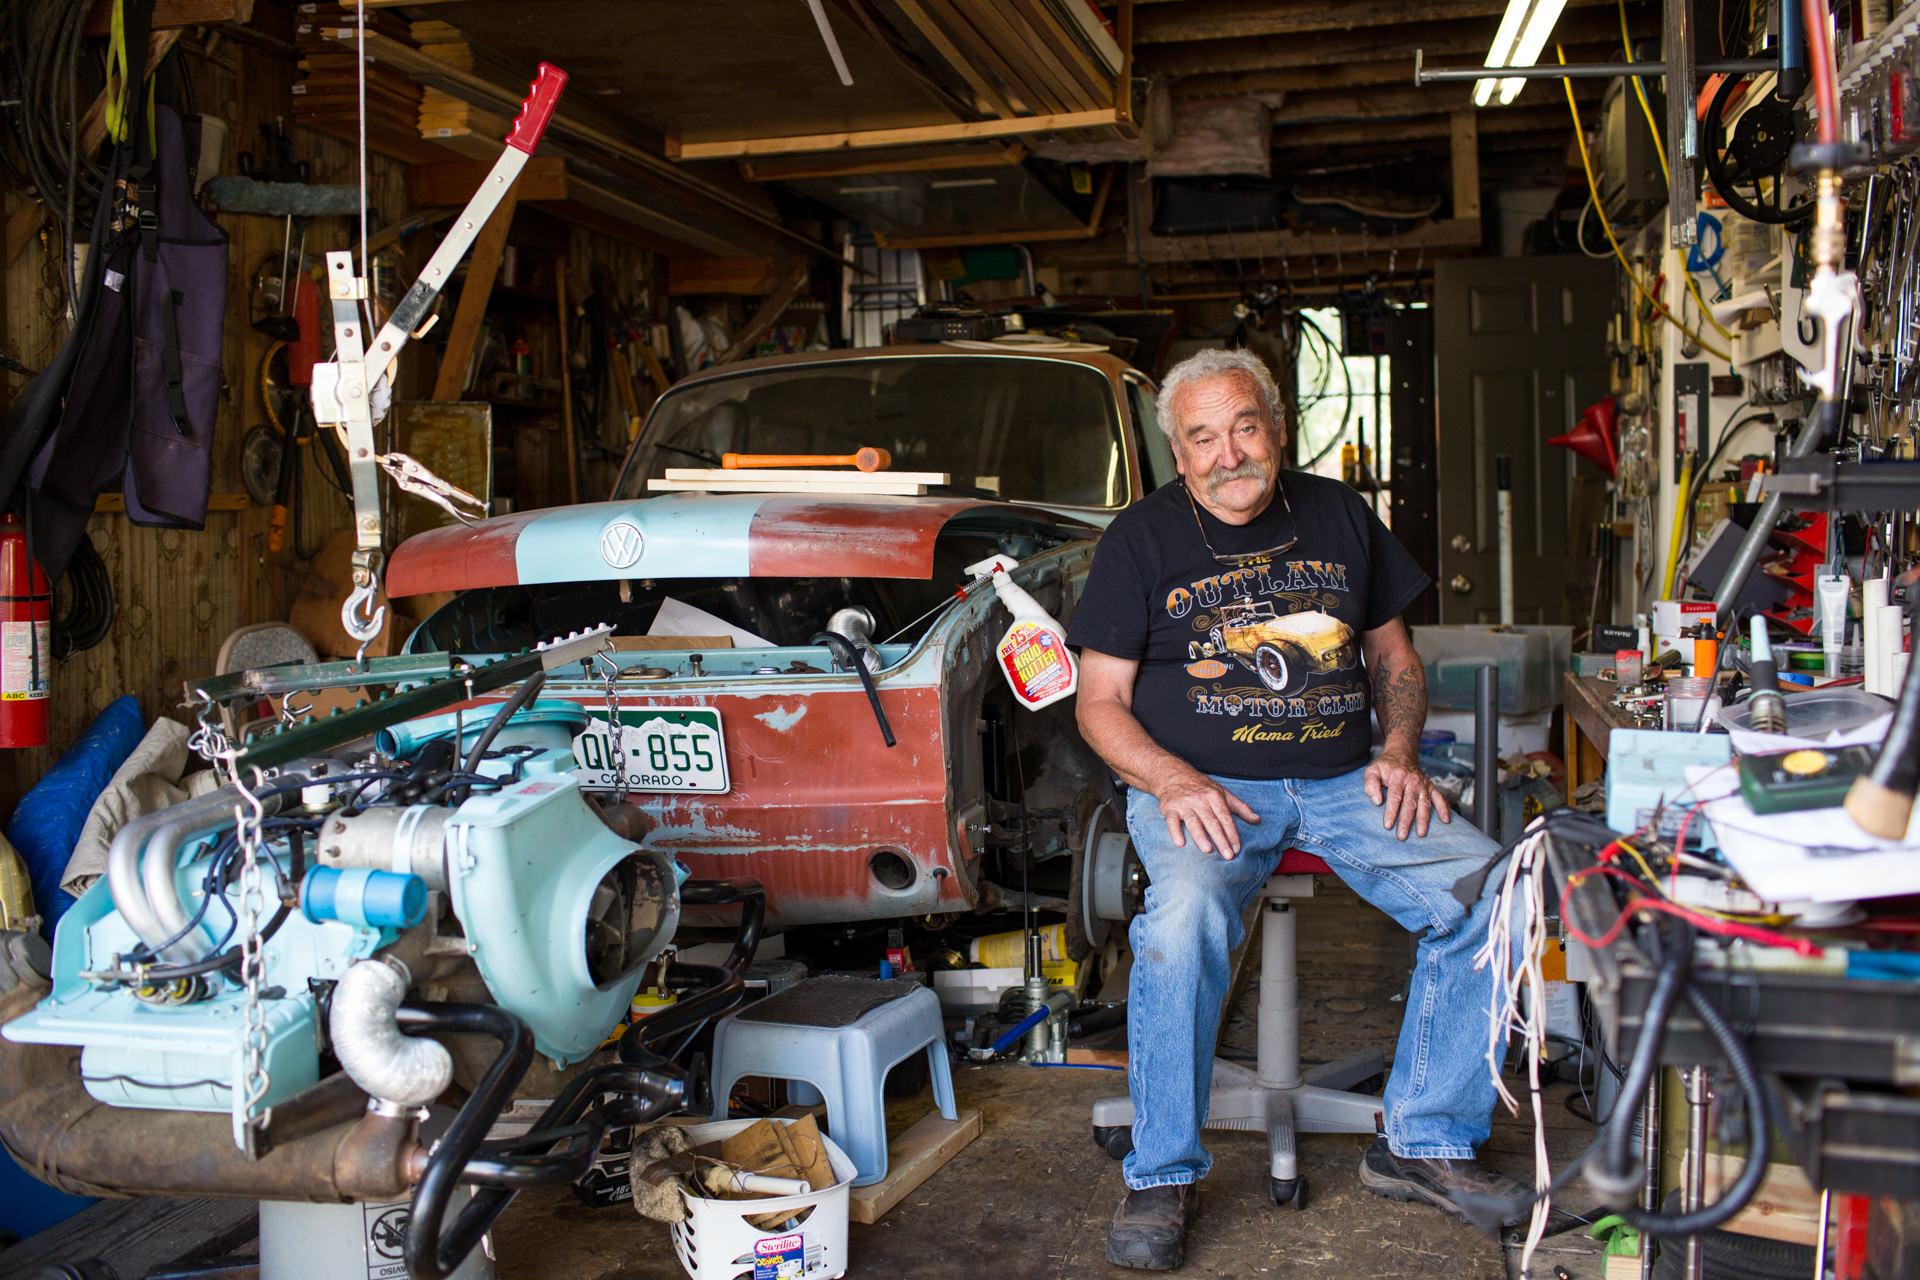 Robert Wood Johnson Foundation - William Schweizer, Sr. works on a car in his garage in...